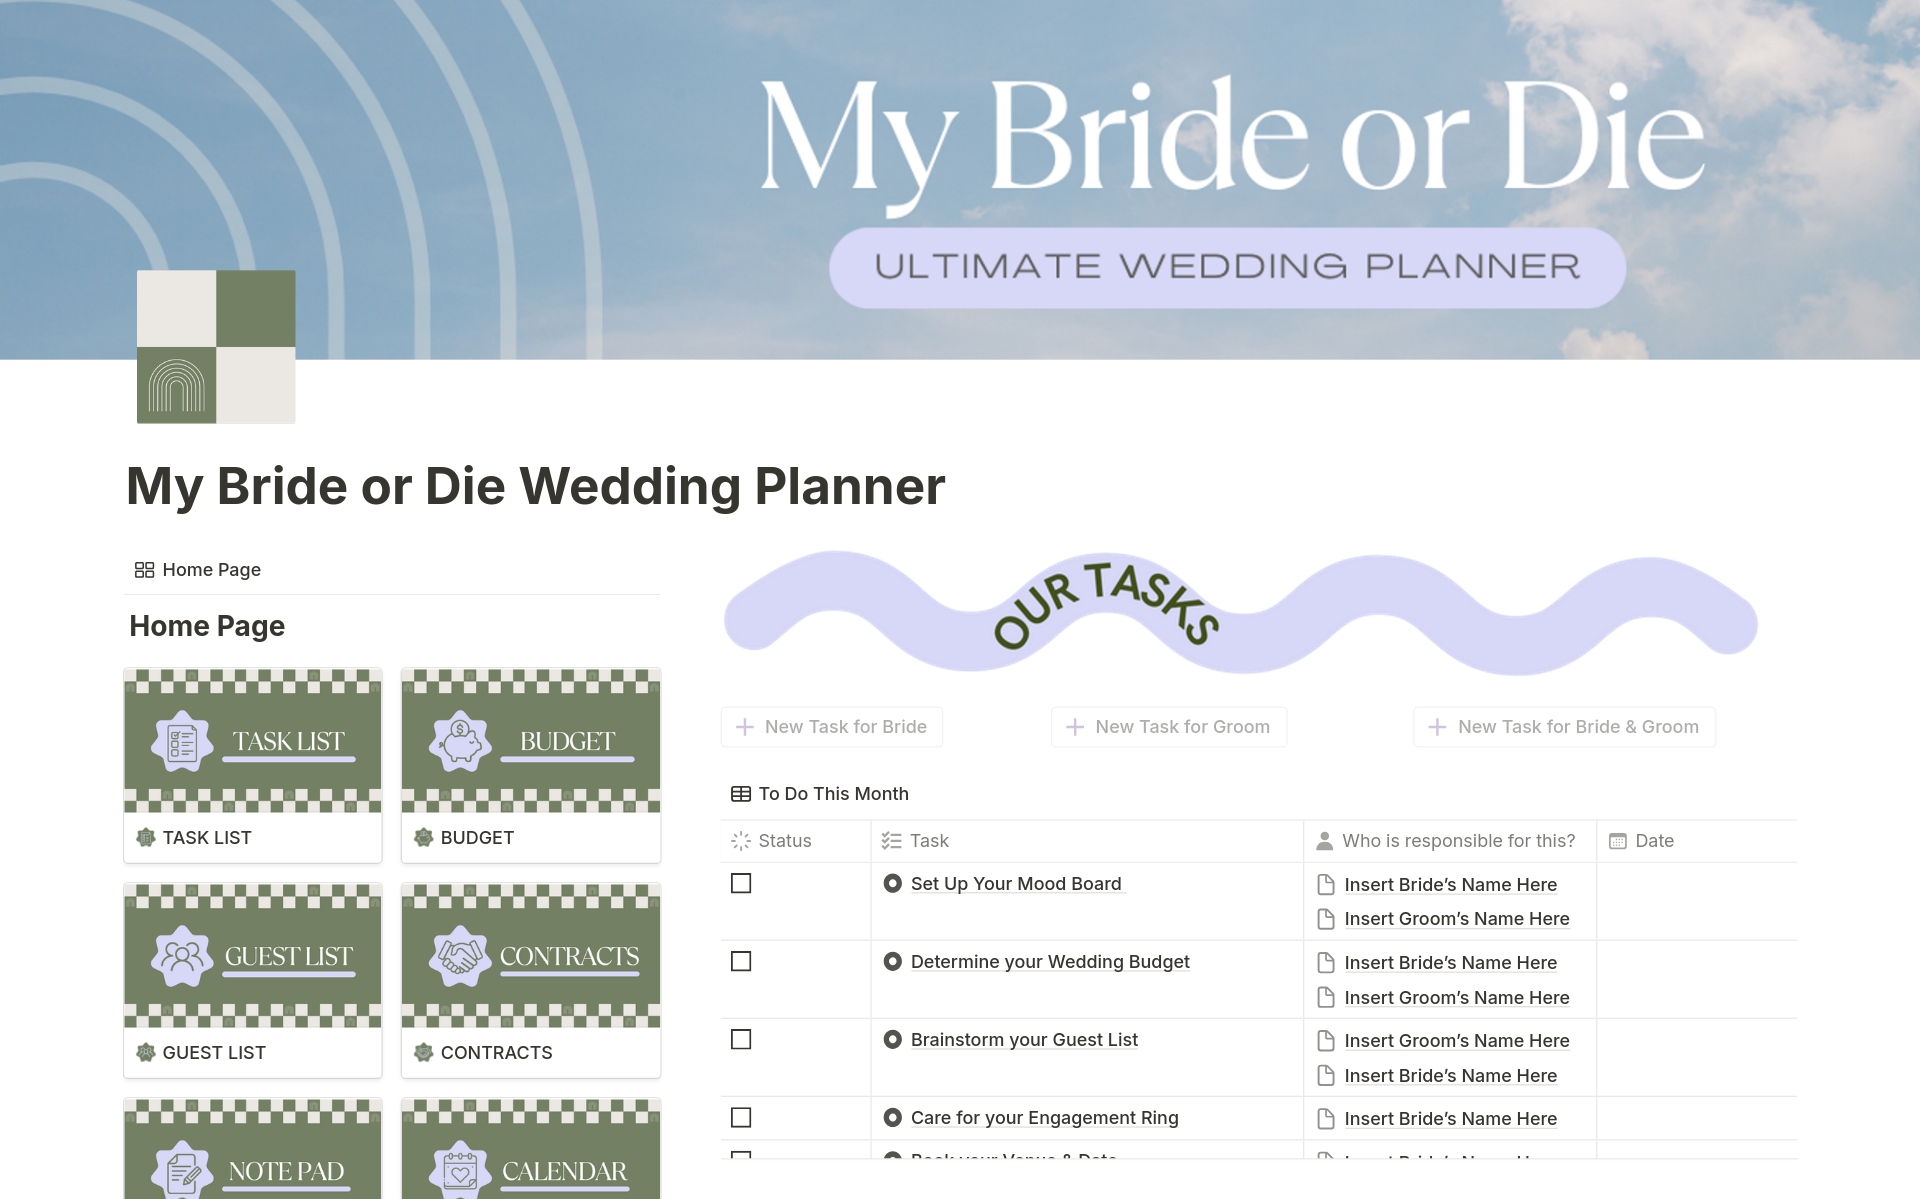 Uma prévia do modelo para My Bride or Die Wedding Planner